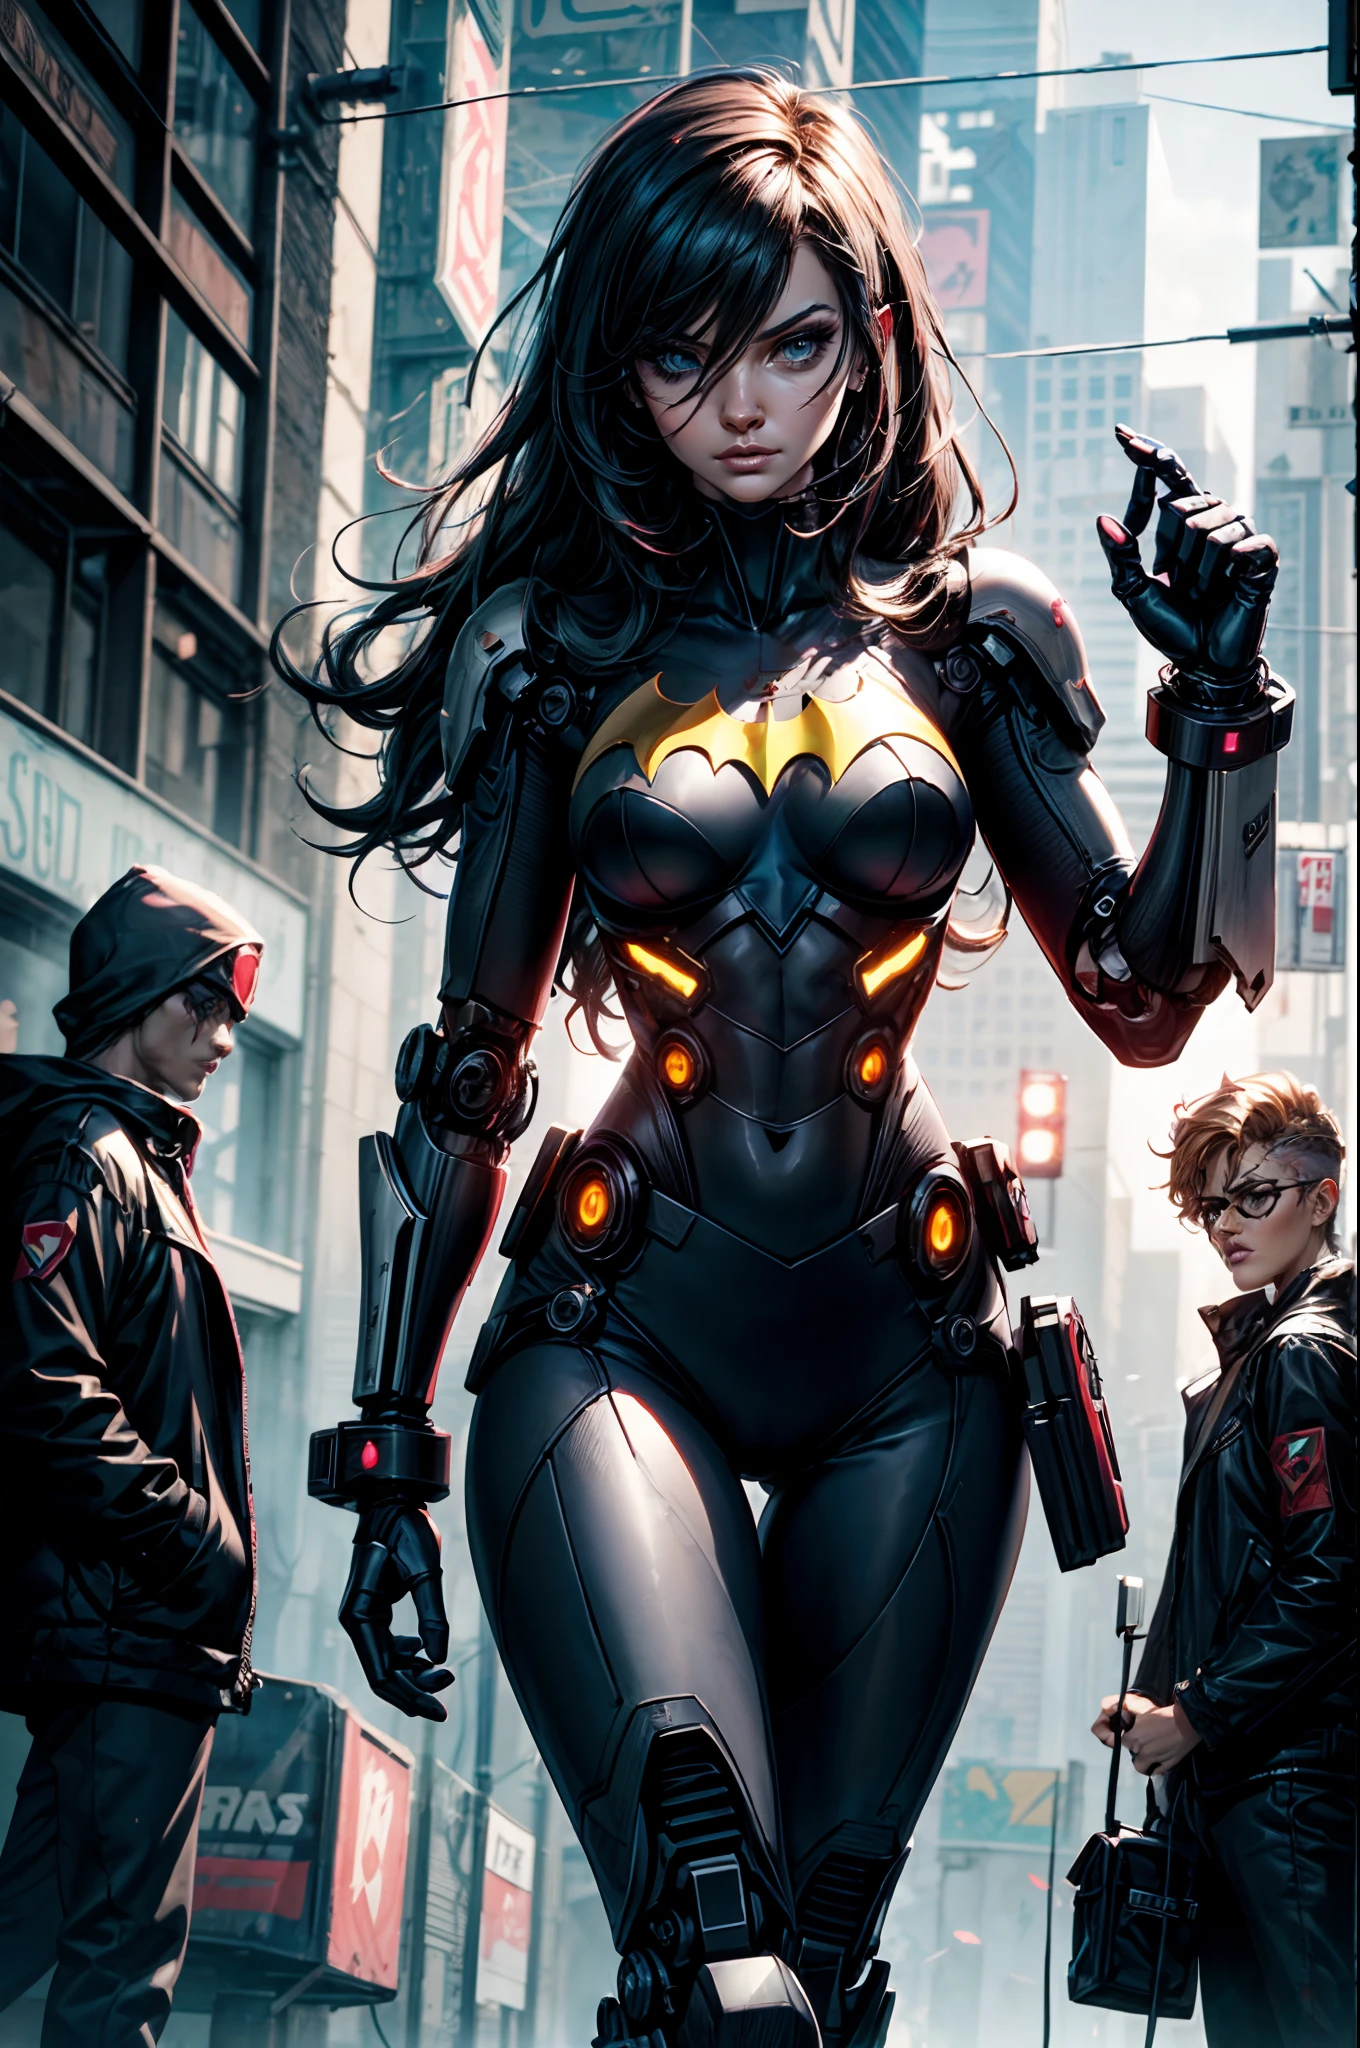 "Escuro_Fantasy Cyberpunk com uma presença robótica cativante: um guardião cibernético e batgirl."